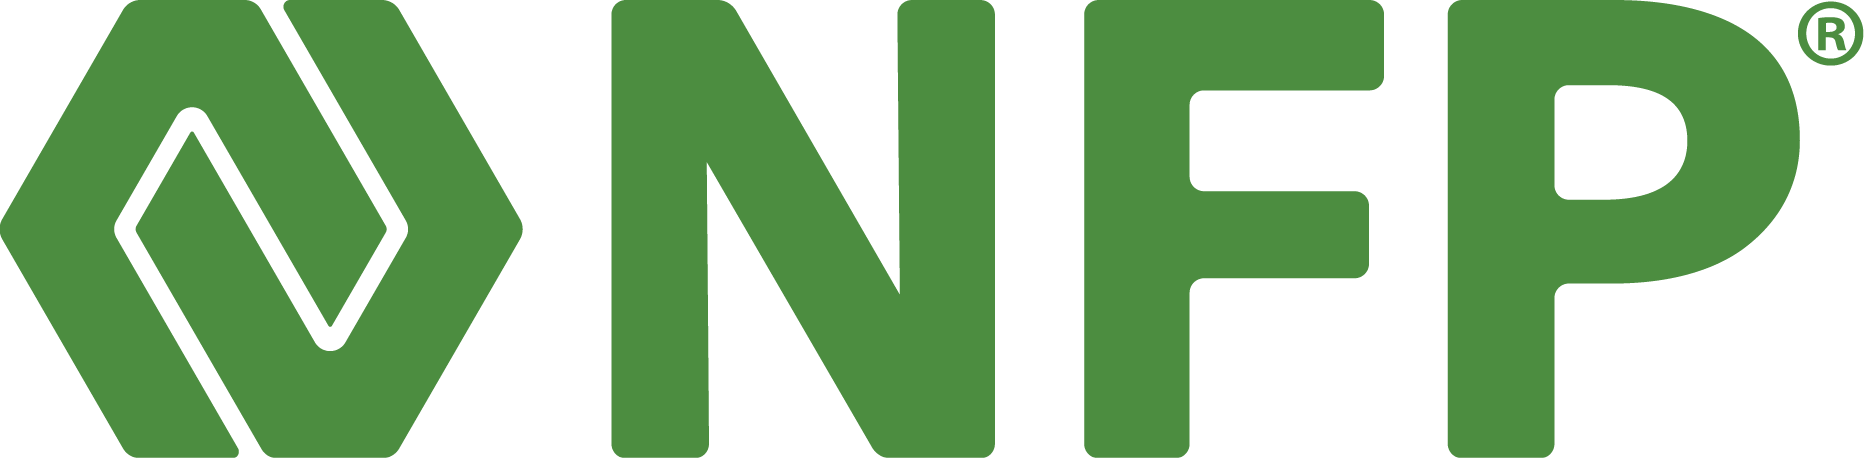 nfp-logo-artwork-cmyk-full-color.png